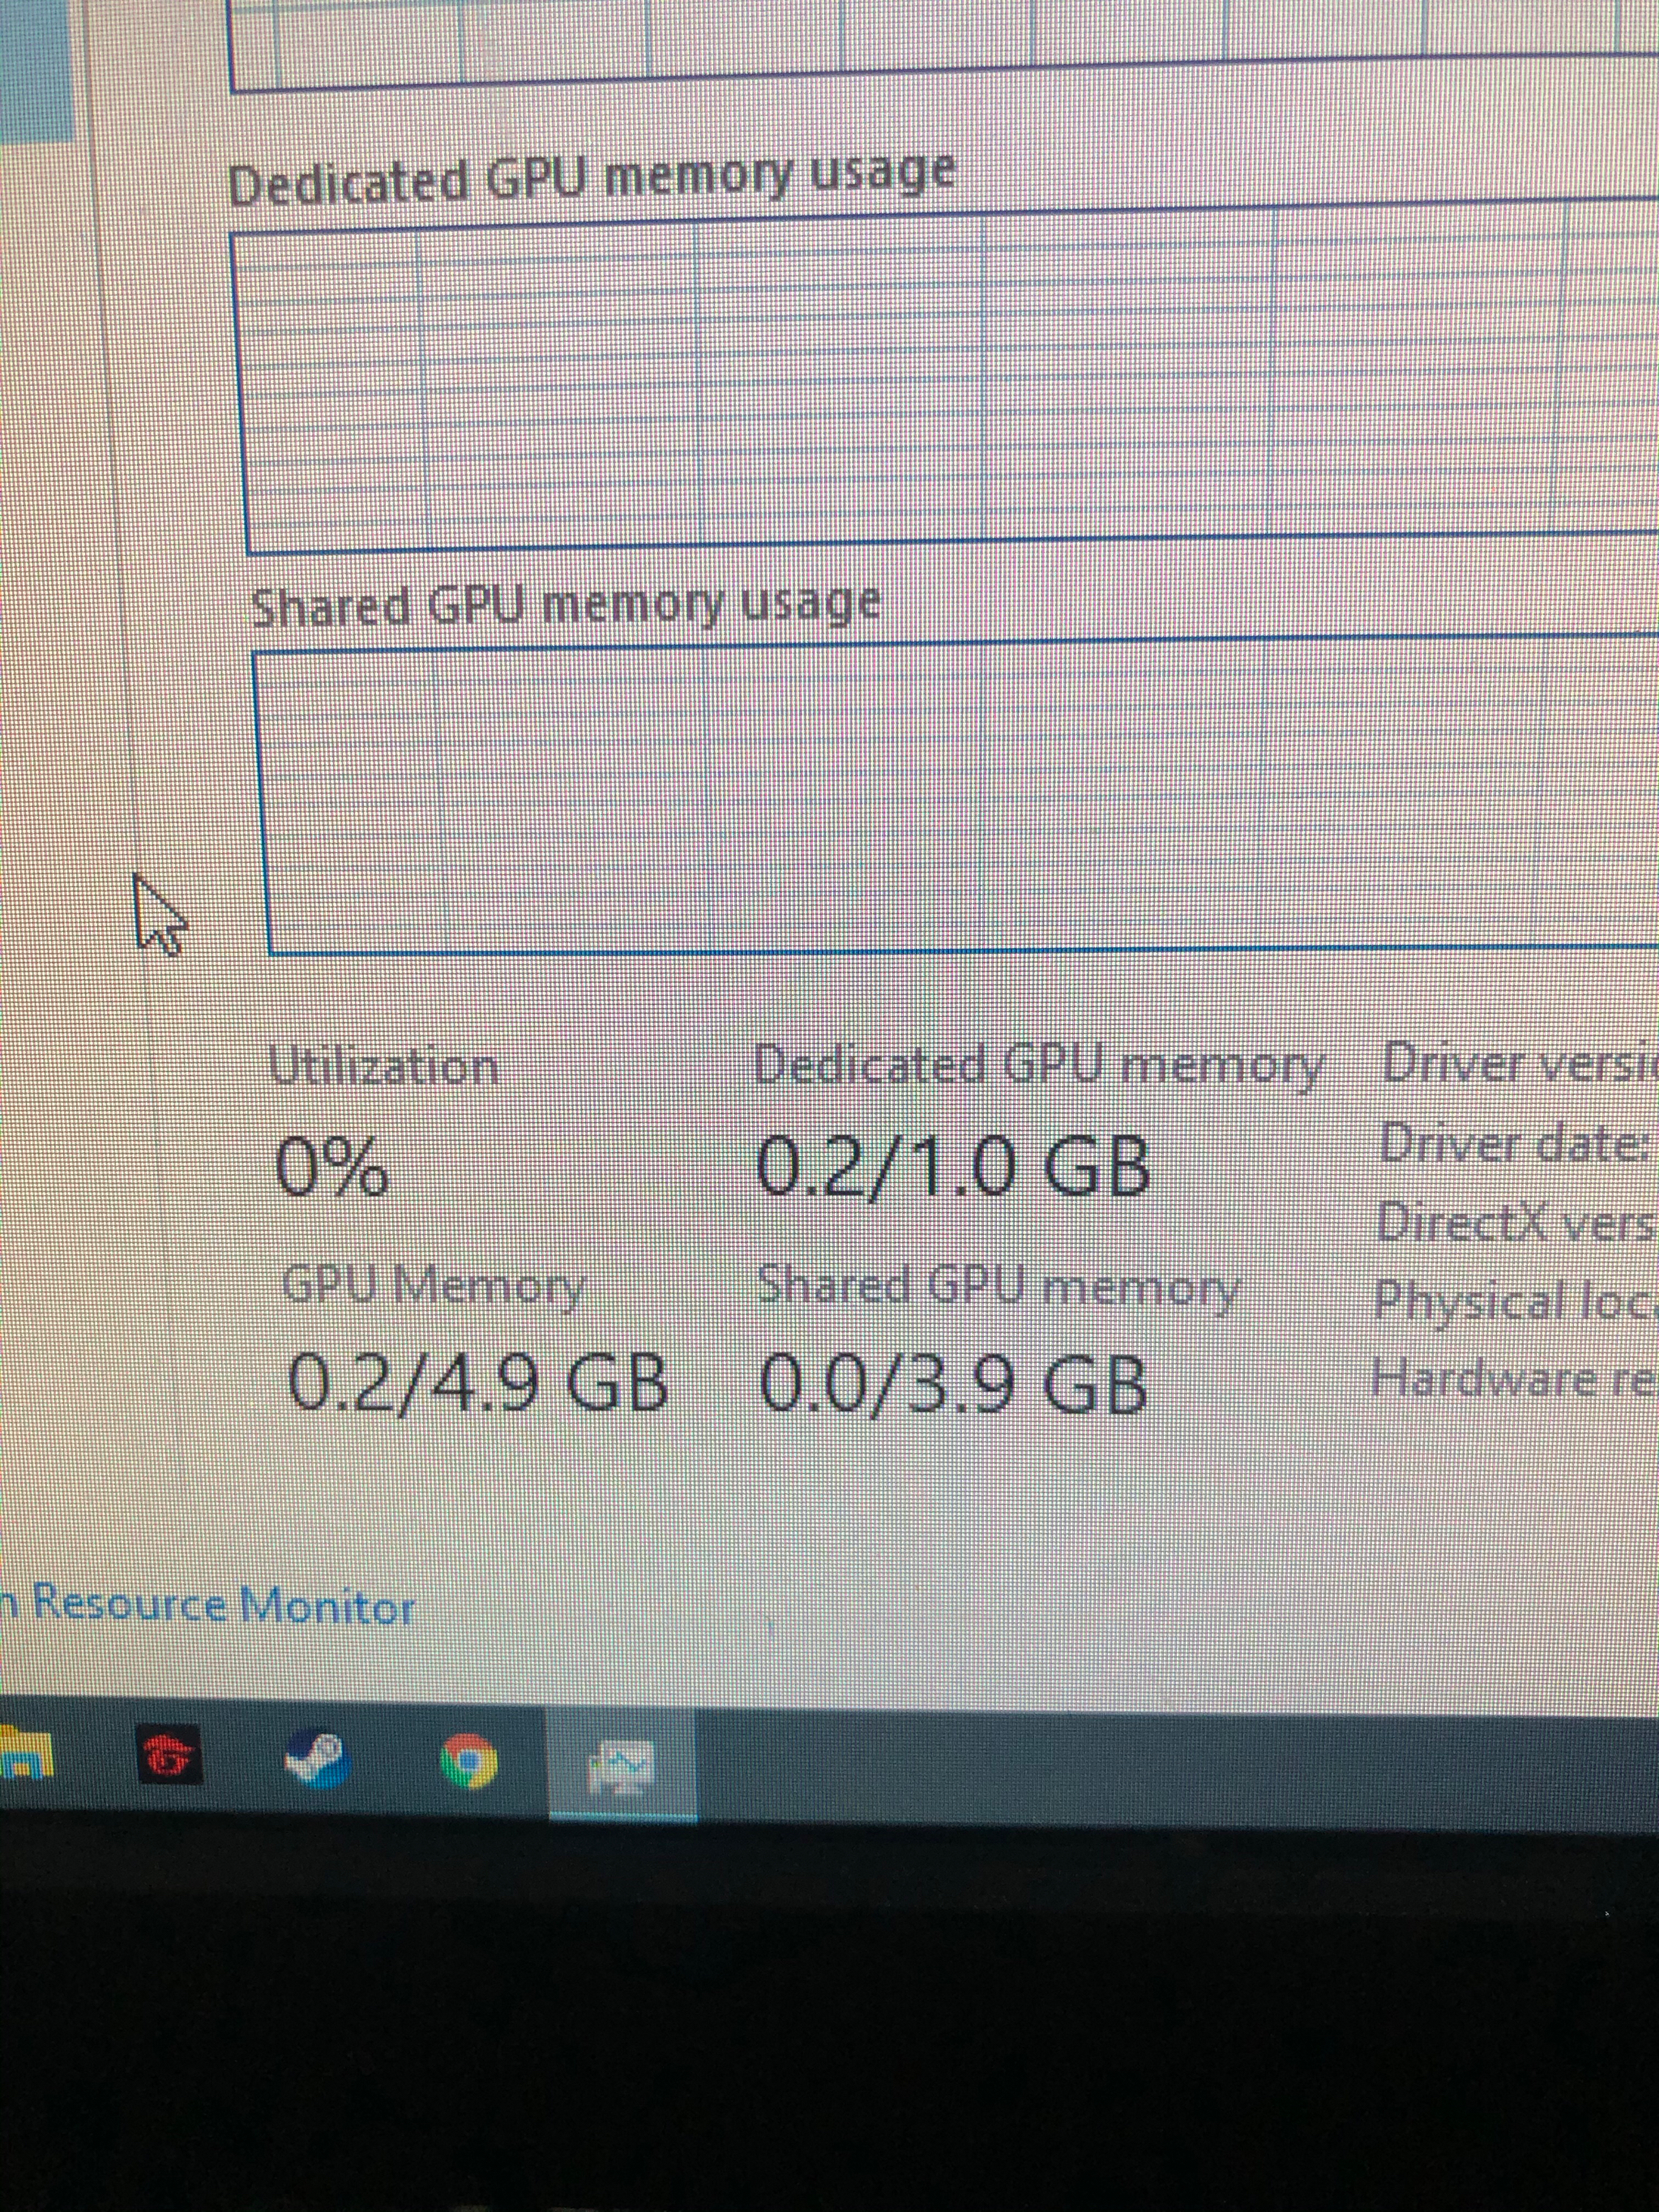 Lợi Ích của Share GPU Memory Trong Xử Lý Đồ Họa